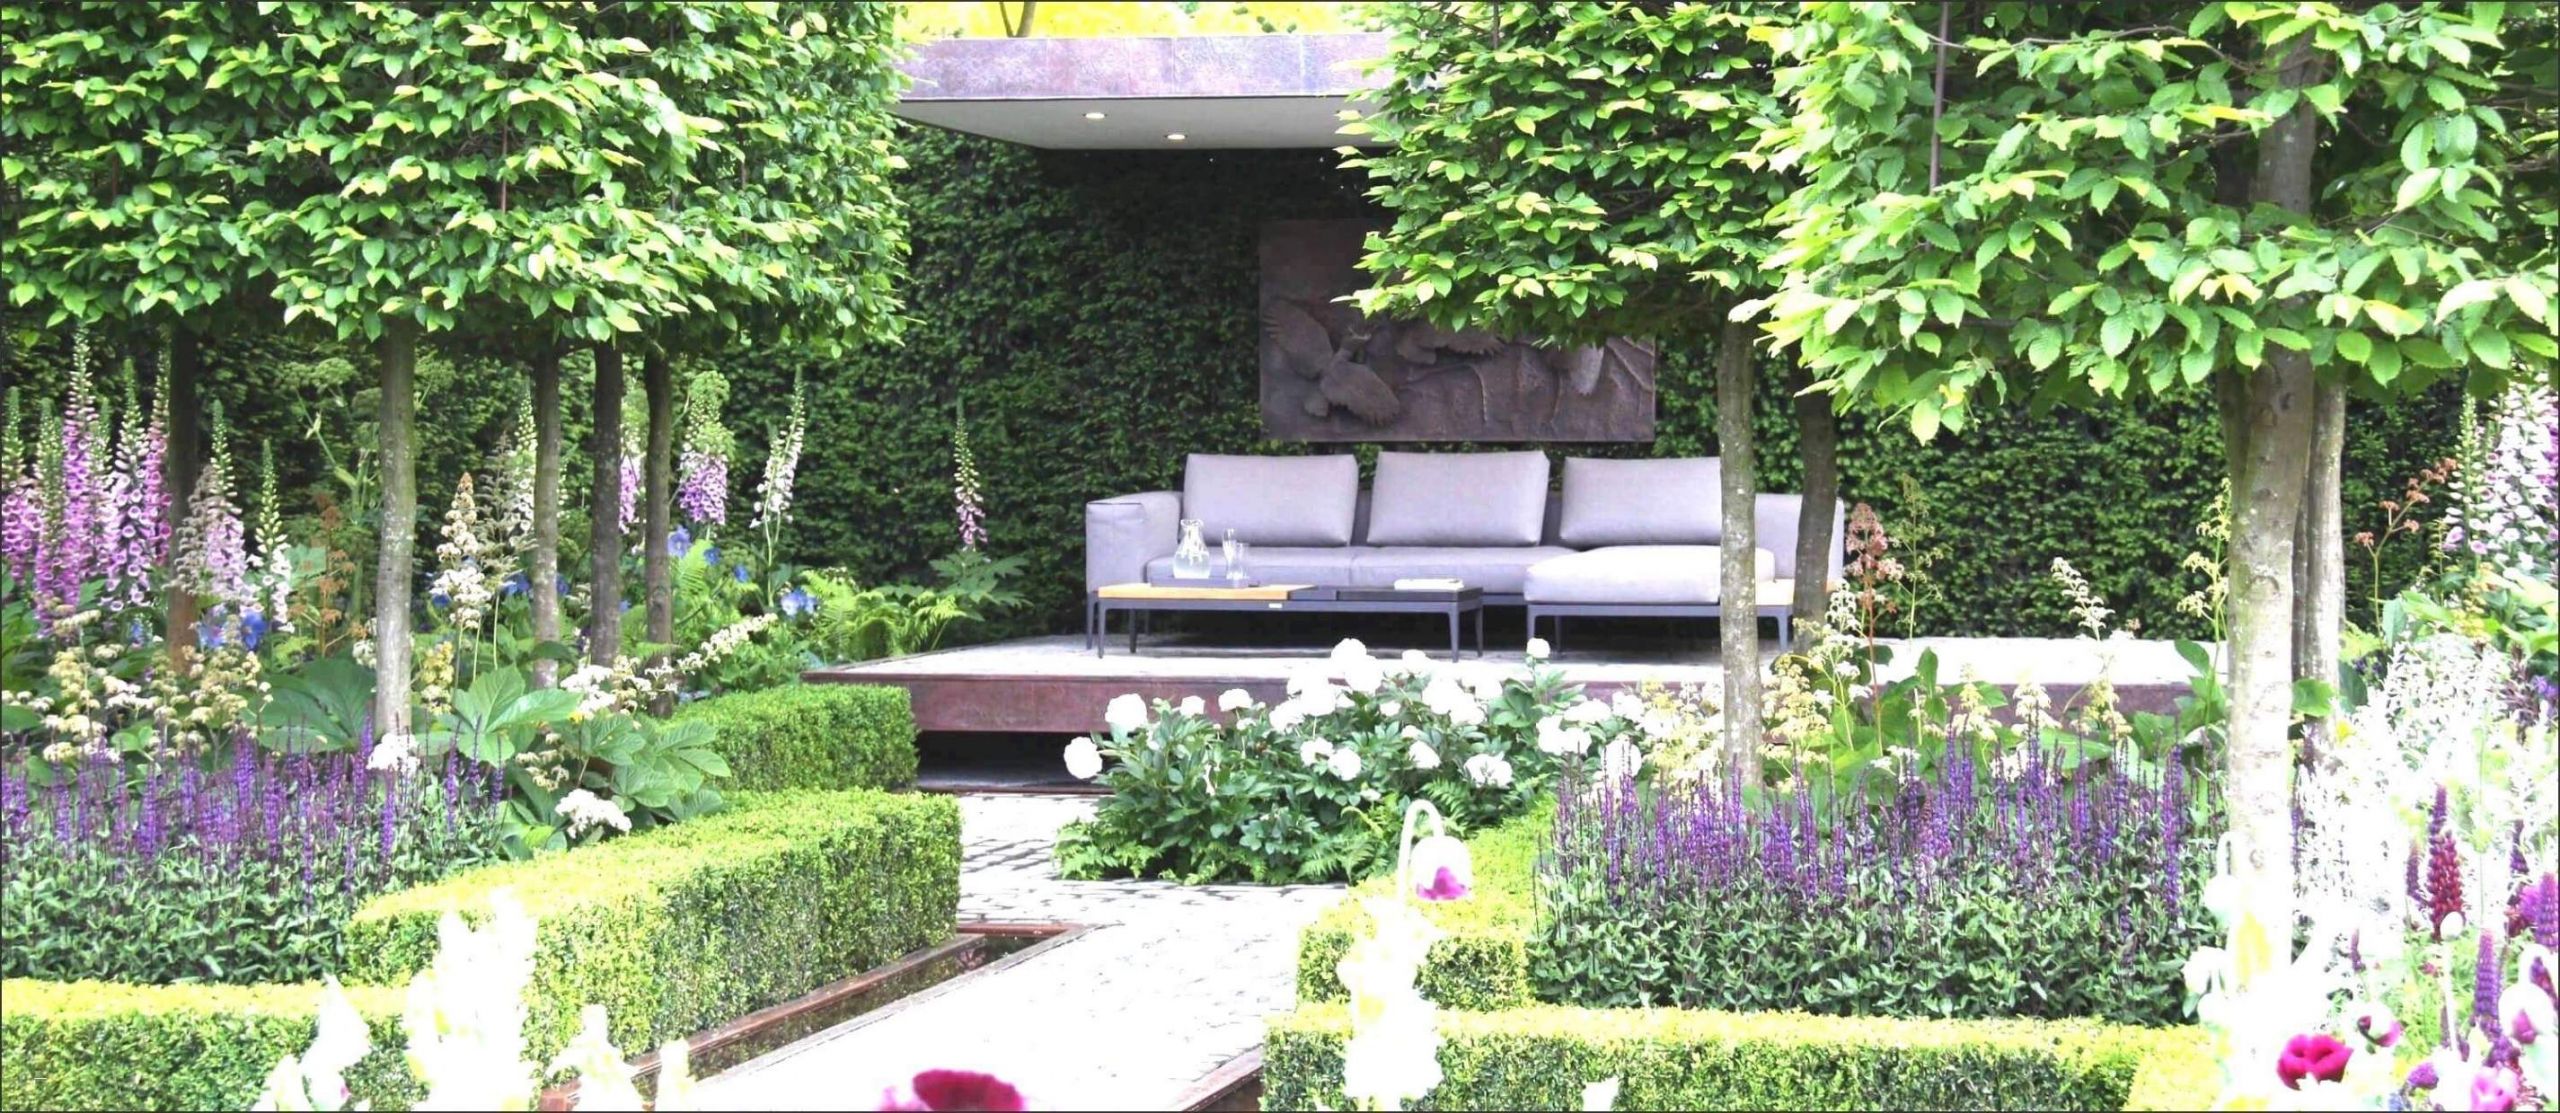 Ideen Für Kleine Reihenhausgärten Inspirierend 25 Reizend Gartengestaltung Für Kleine Gärten Genial